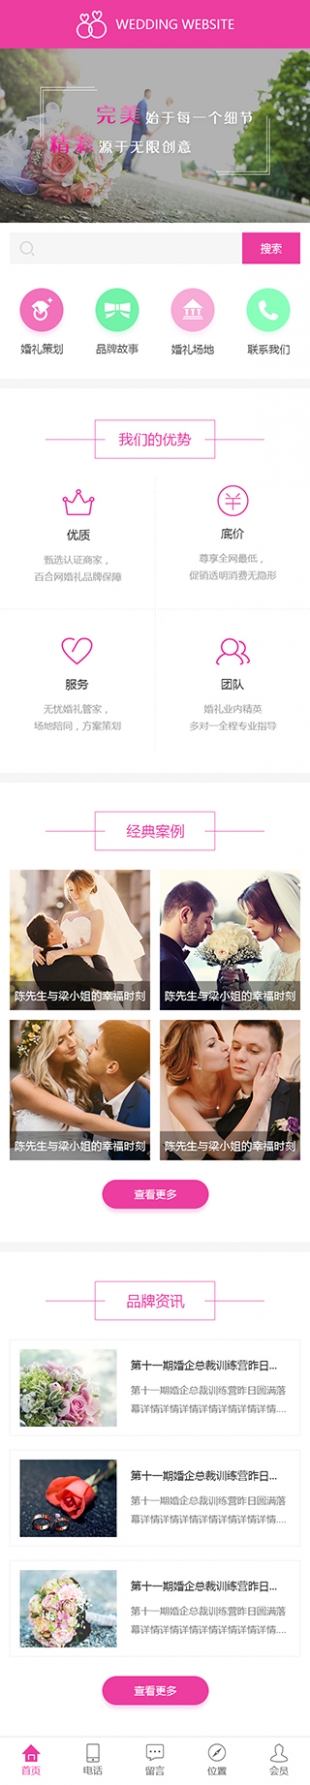 婚礼定制类网站建设模板手机图片